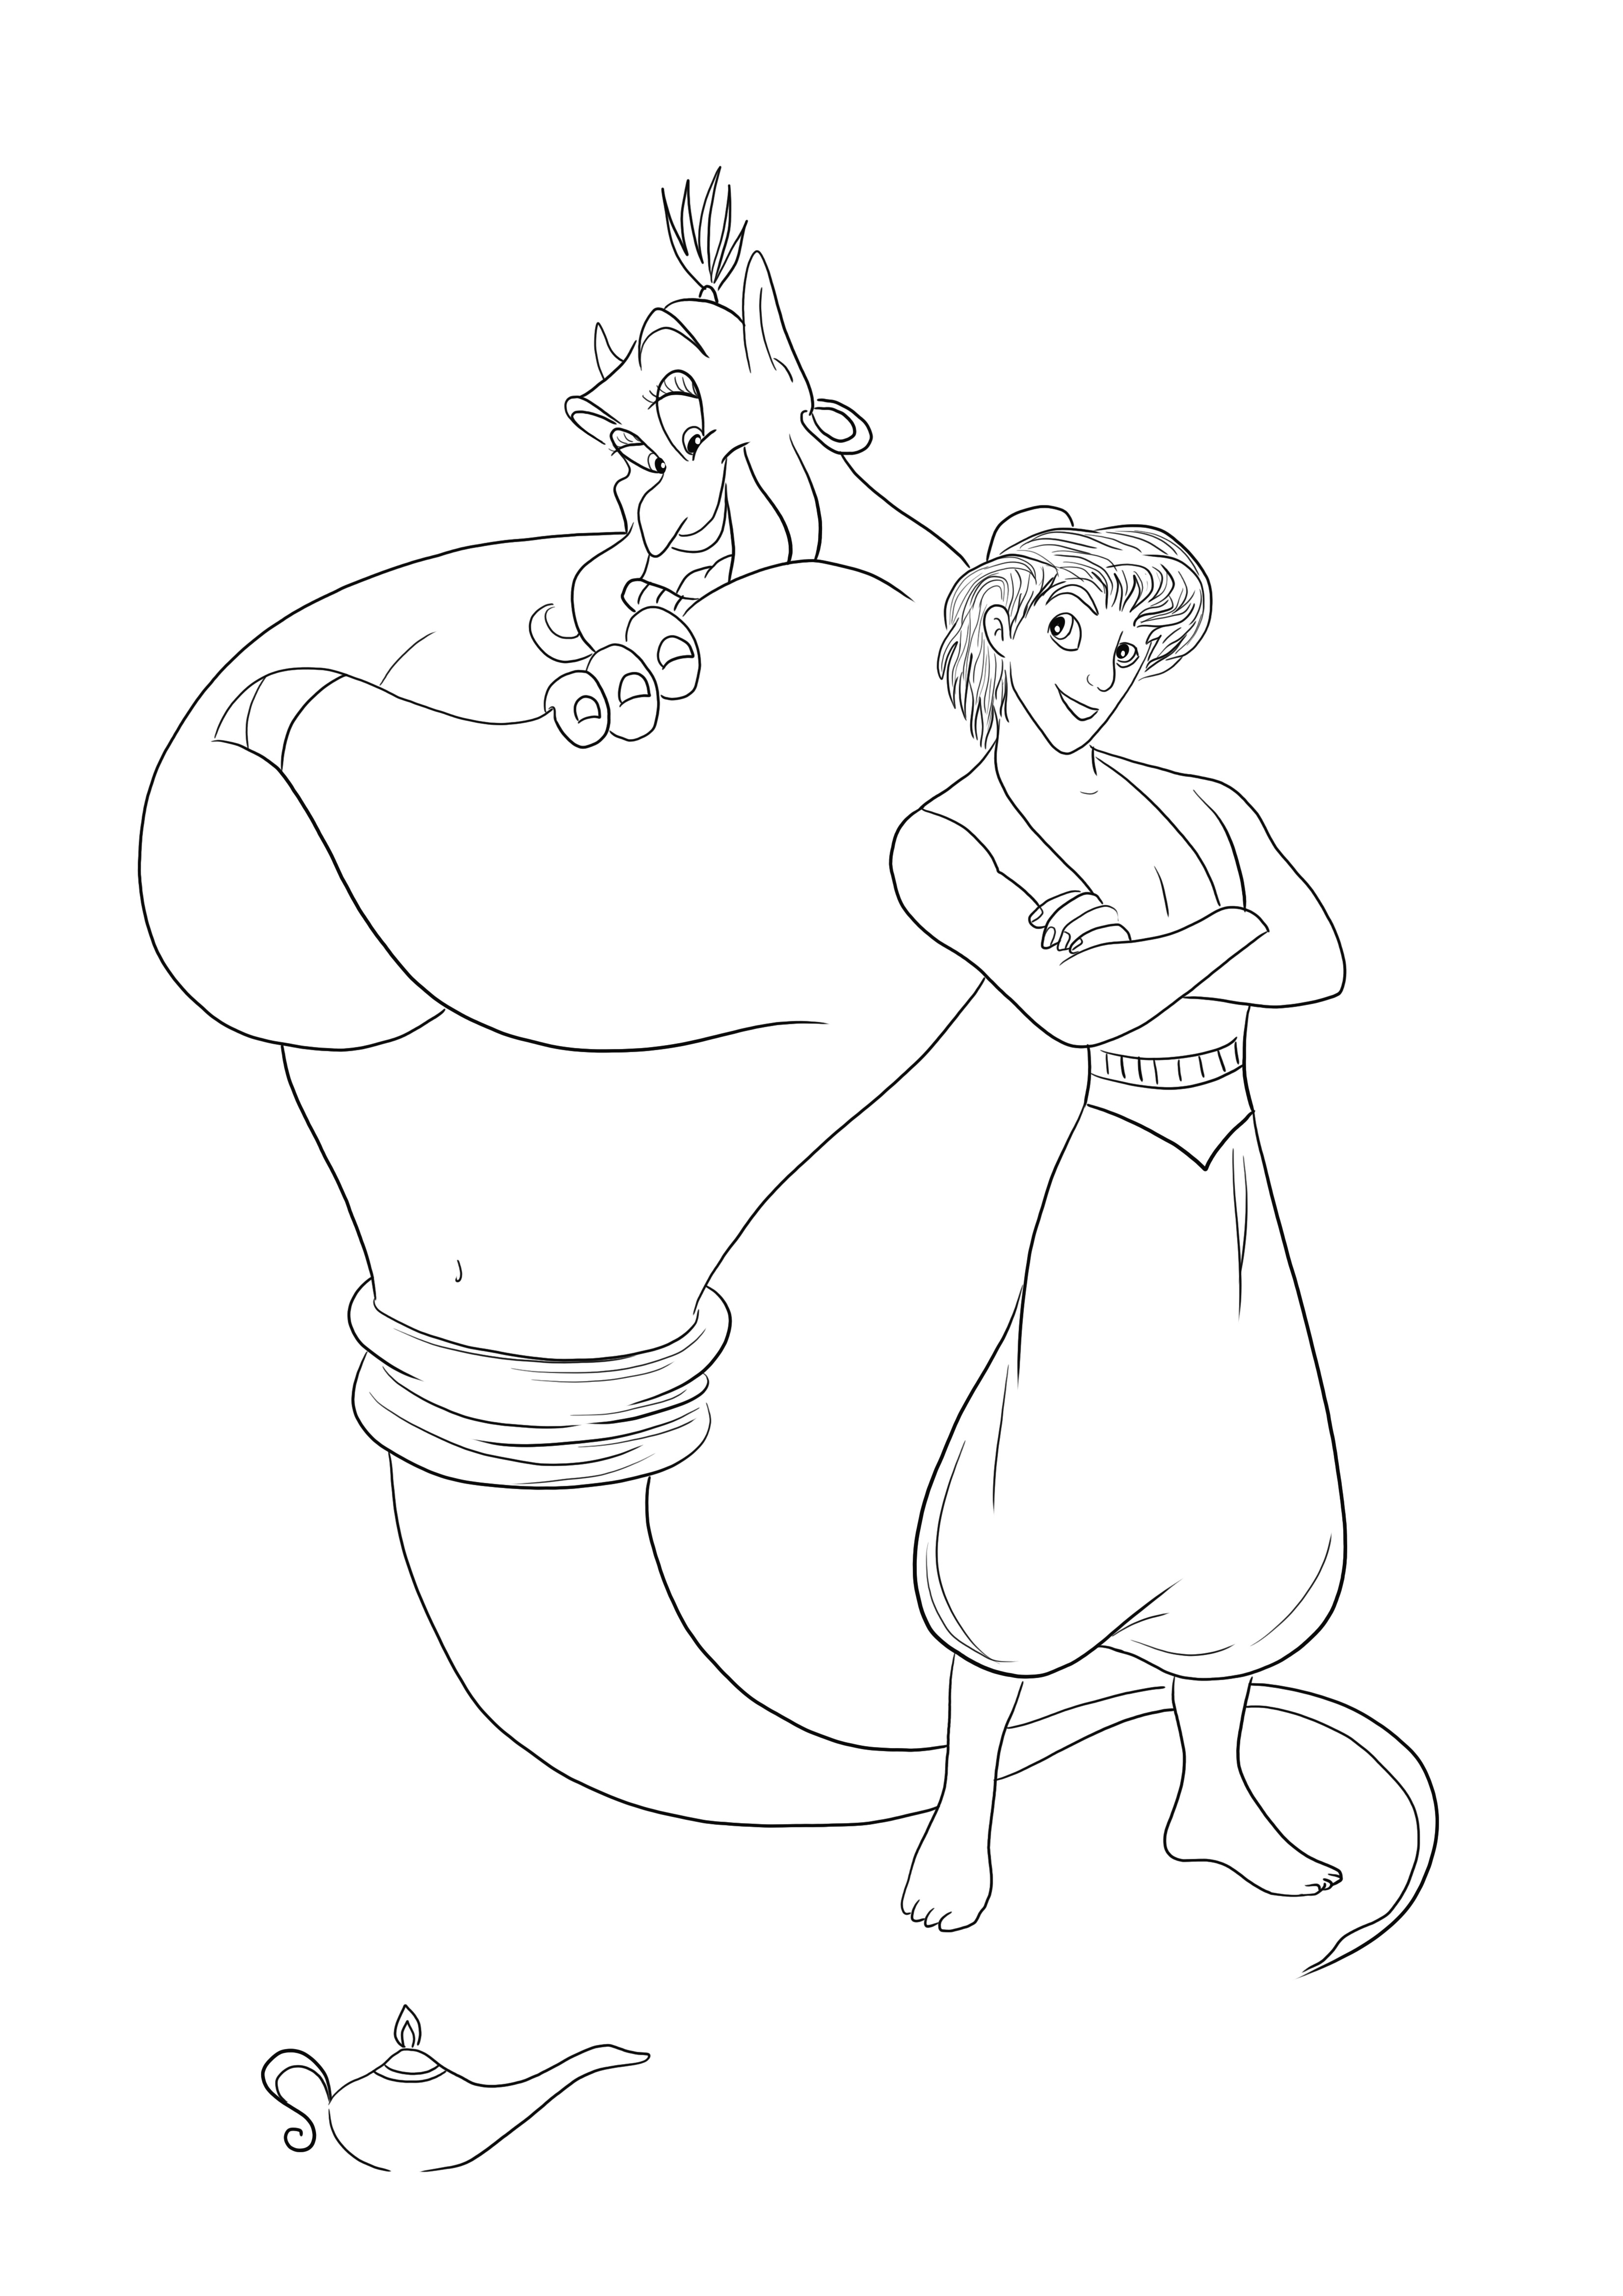 Genie ve Aladdin ücretsiz olarak yazdırılabilir, renklendirilebilir ve aynı anda eğlenebilirsiniz